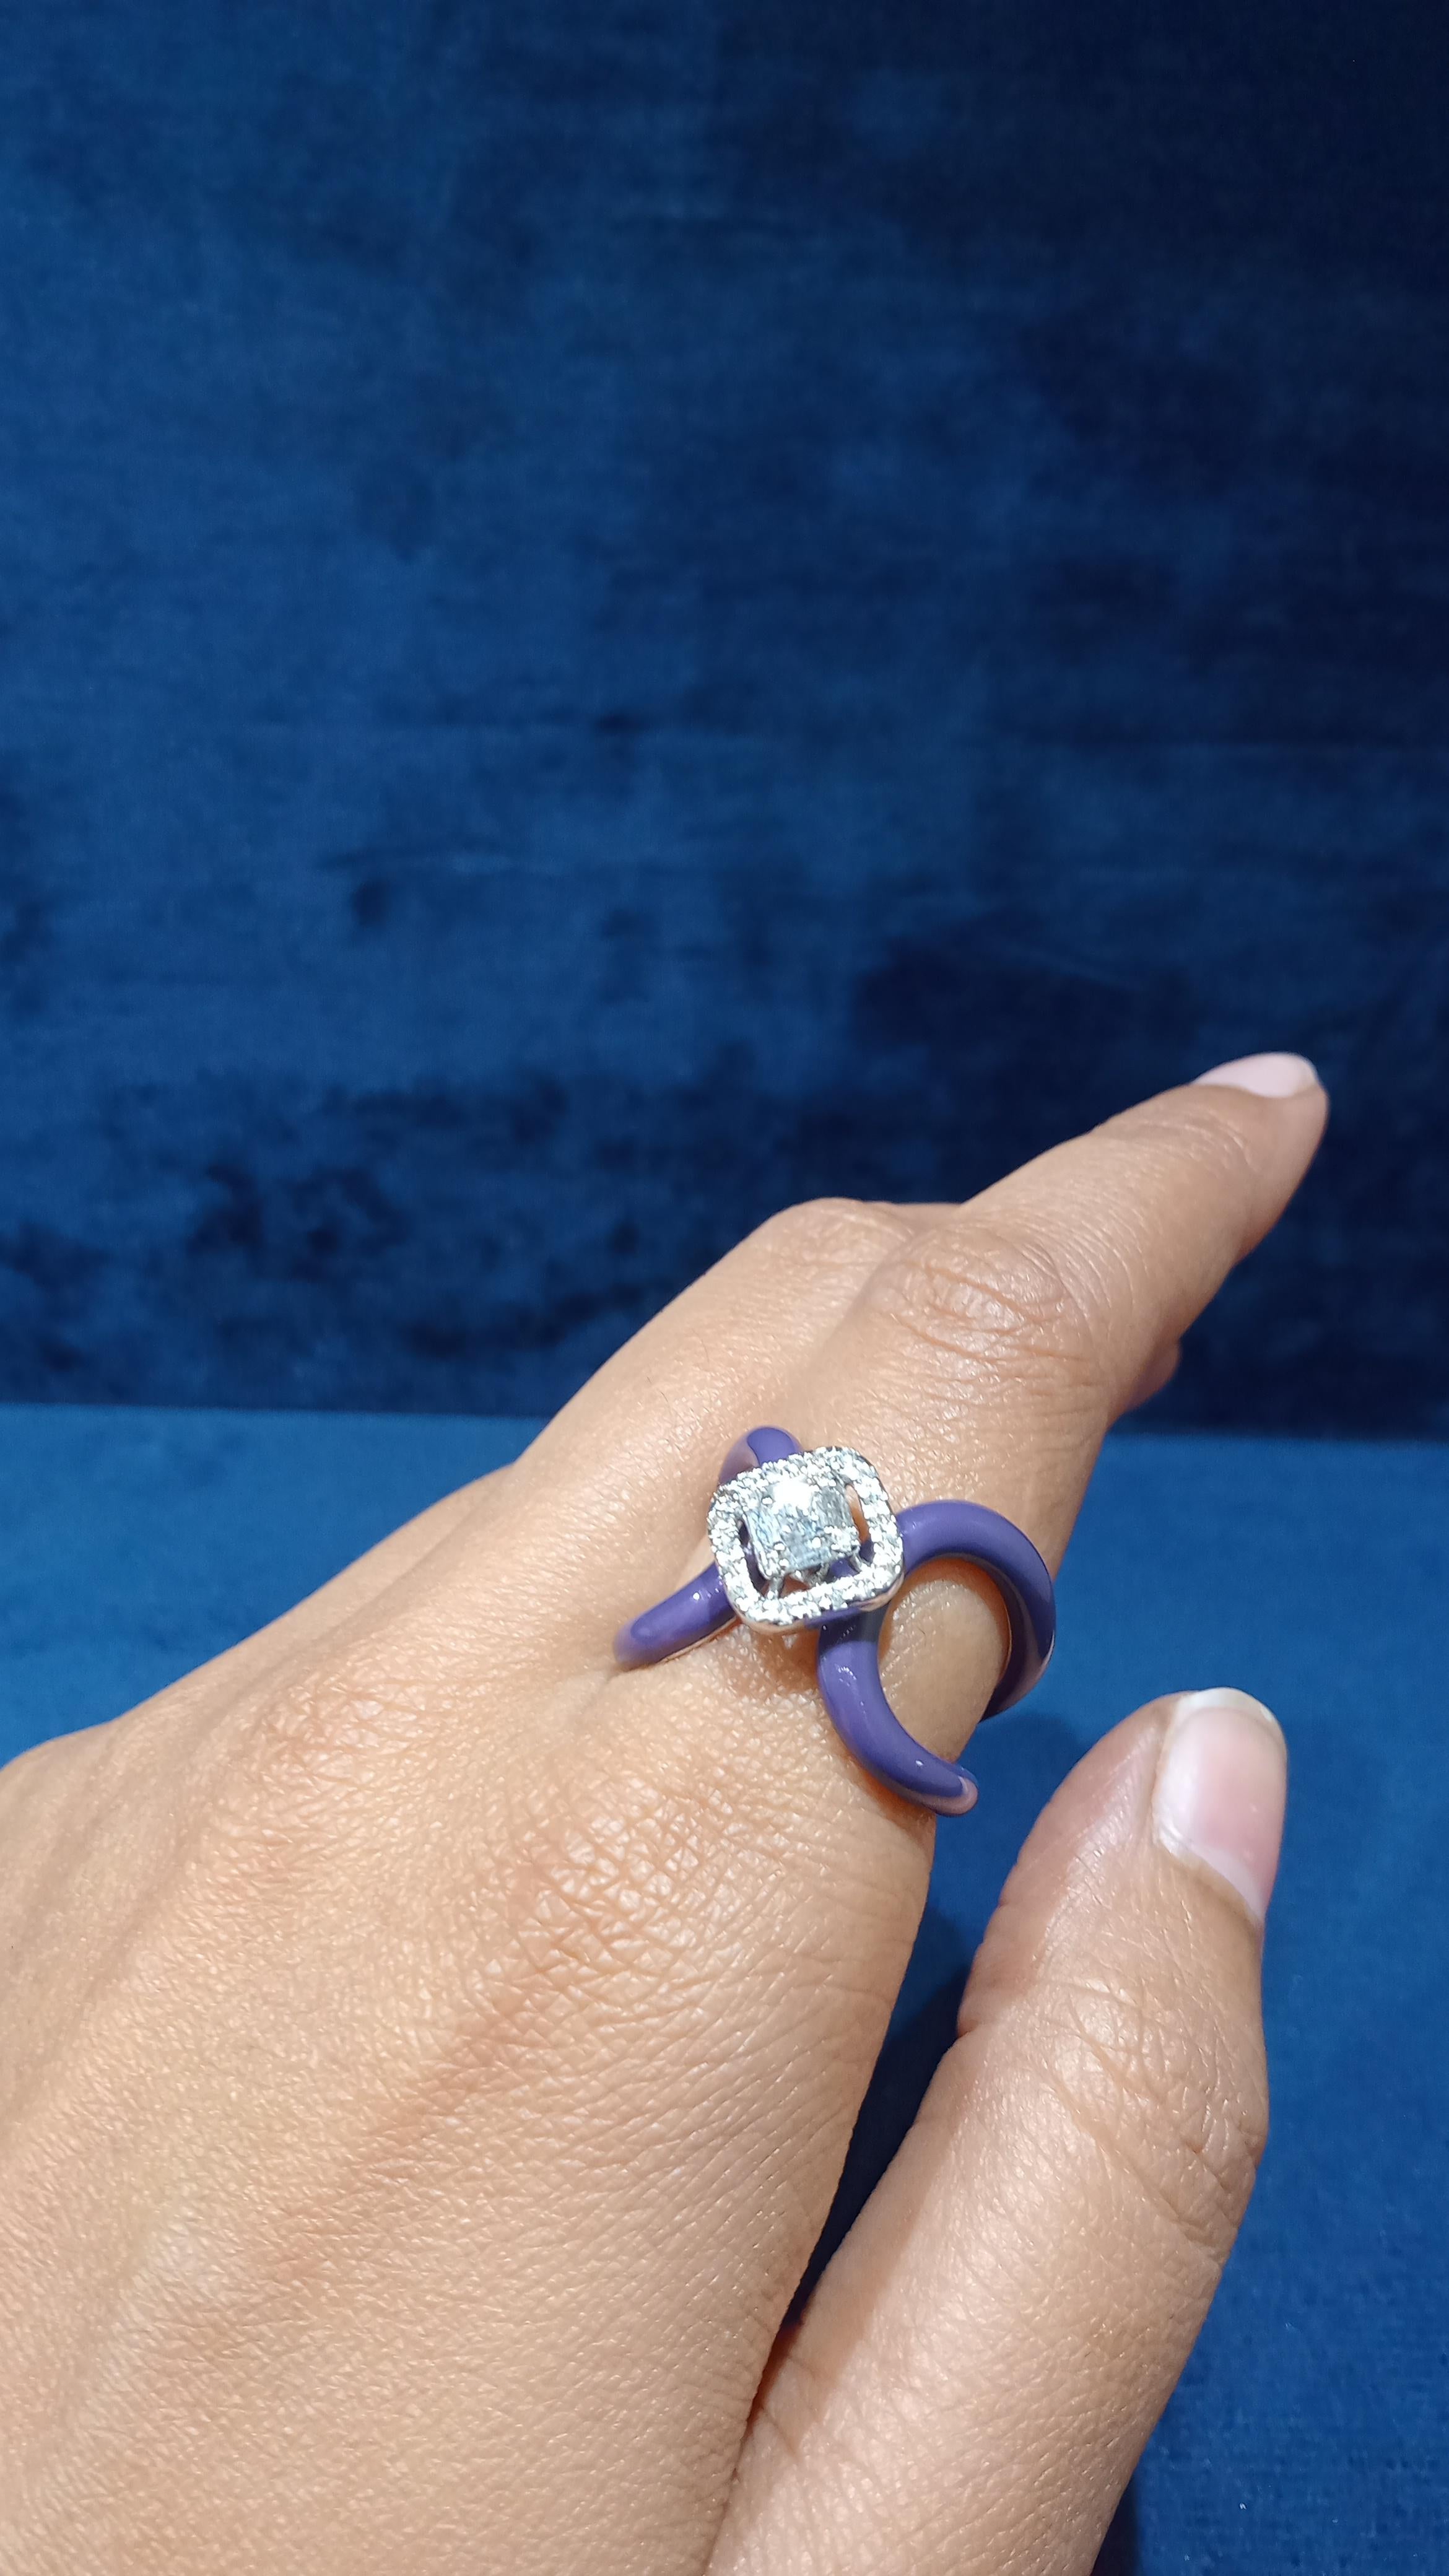 For Sale:  14 Karat White Gold Enamel Fancy Shape White Diamond Ring 3